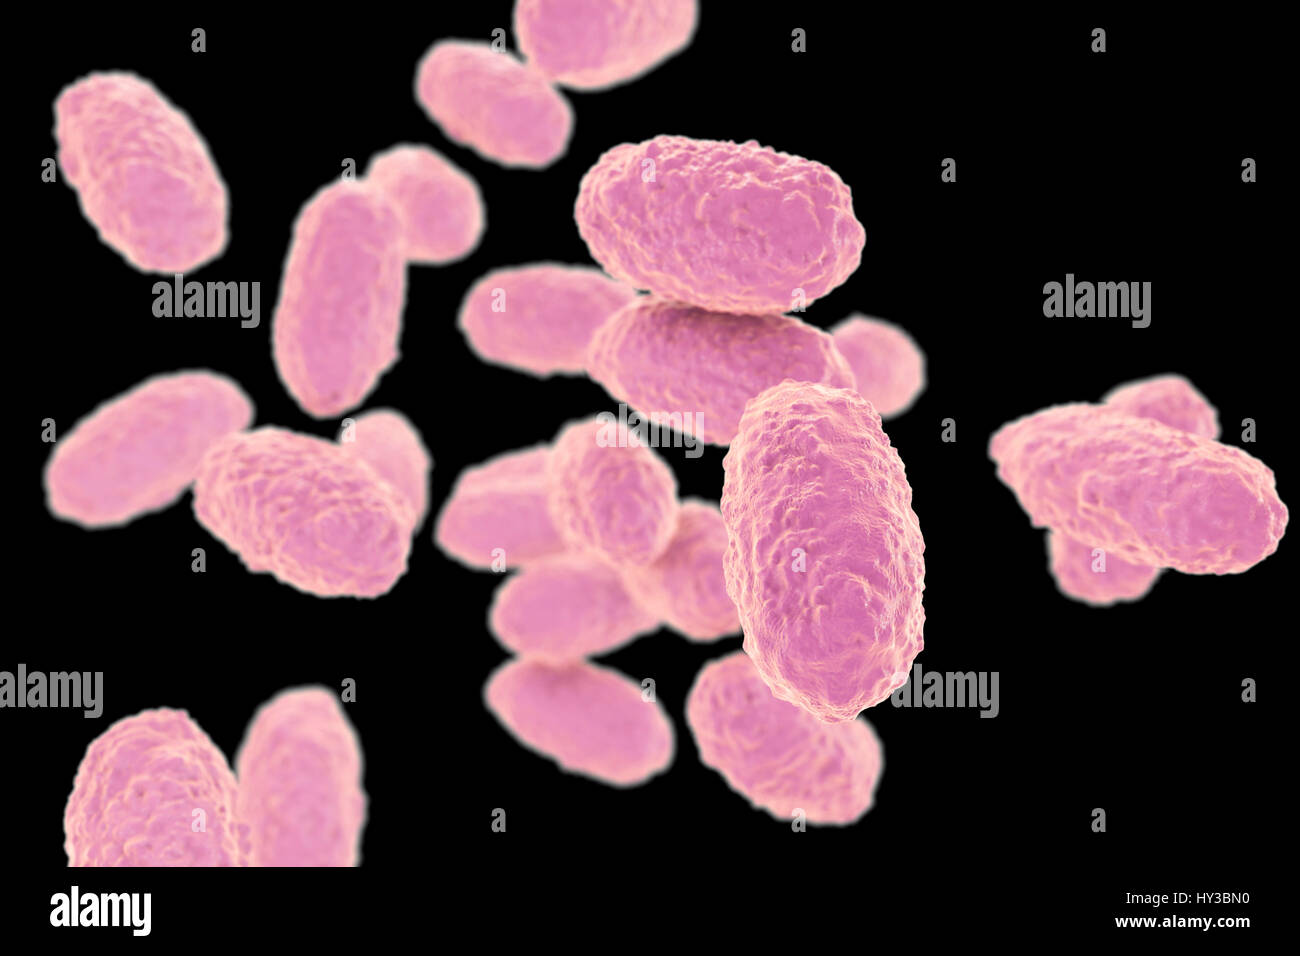 Keuchhusten-Bakterien (Bordetella Pertussis), Computer-Illustration. B. Pertussis sind gramnegative, aerobe, bewegliche, Coccobacillus Bakterien. Sie verteilen sich durch Husten und Nasentropfen. Die Inkubationszeit beträgt 7-14 Tage. Eine Impfung ist möglich für diese bakterielle Erreger. Pertussis-Impfstoff ist Bestandteil der DTaP (Diphtherie, Tetanus, azellulären Pertussis) Immunisierung. B. Pertussis produziert auch einen Lymphozytose Förderung Faktor, wodurch eine Abnahme in den Eintrag von Lymphozyten in den Lymphknoten. Dies führt zu einem Zustand bekannt als Lymphozytose. Stockfoto